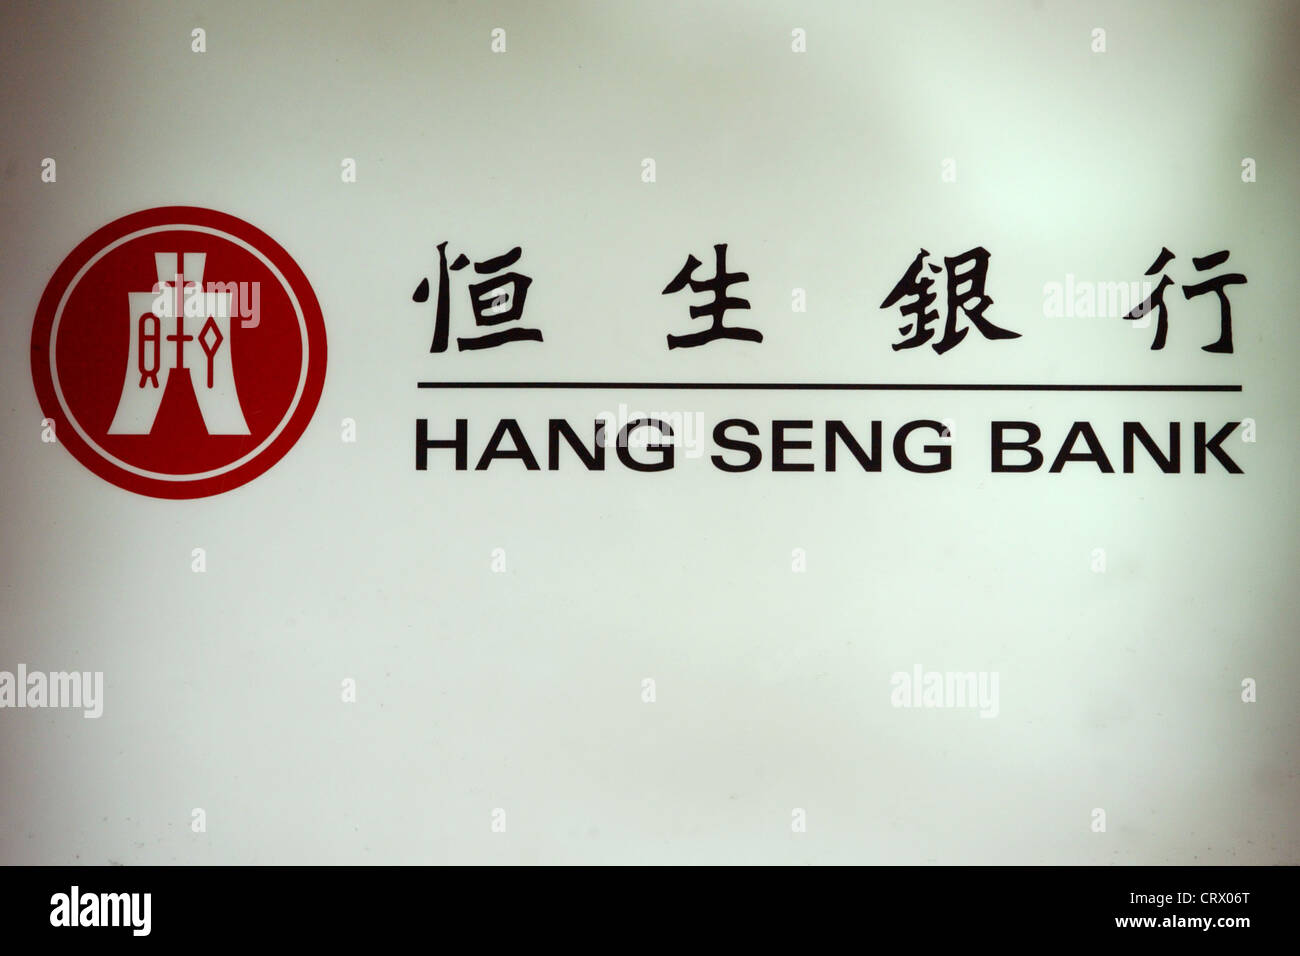 Logo der Hang Seng Bank in Englisch und Chinesisch Stockfoto